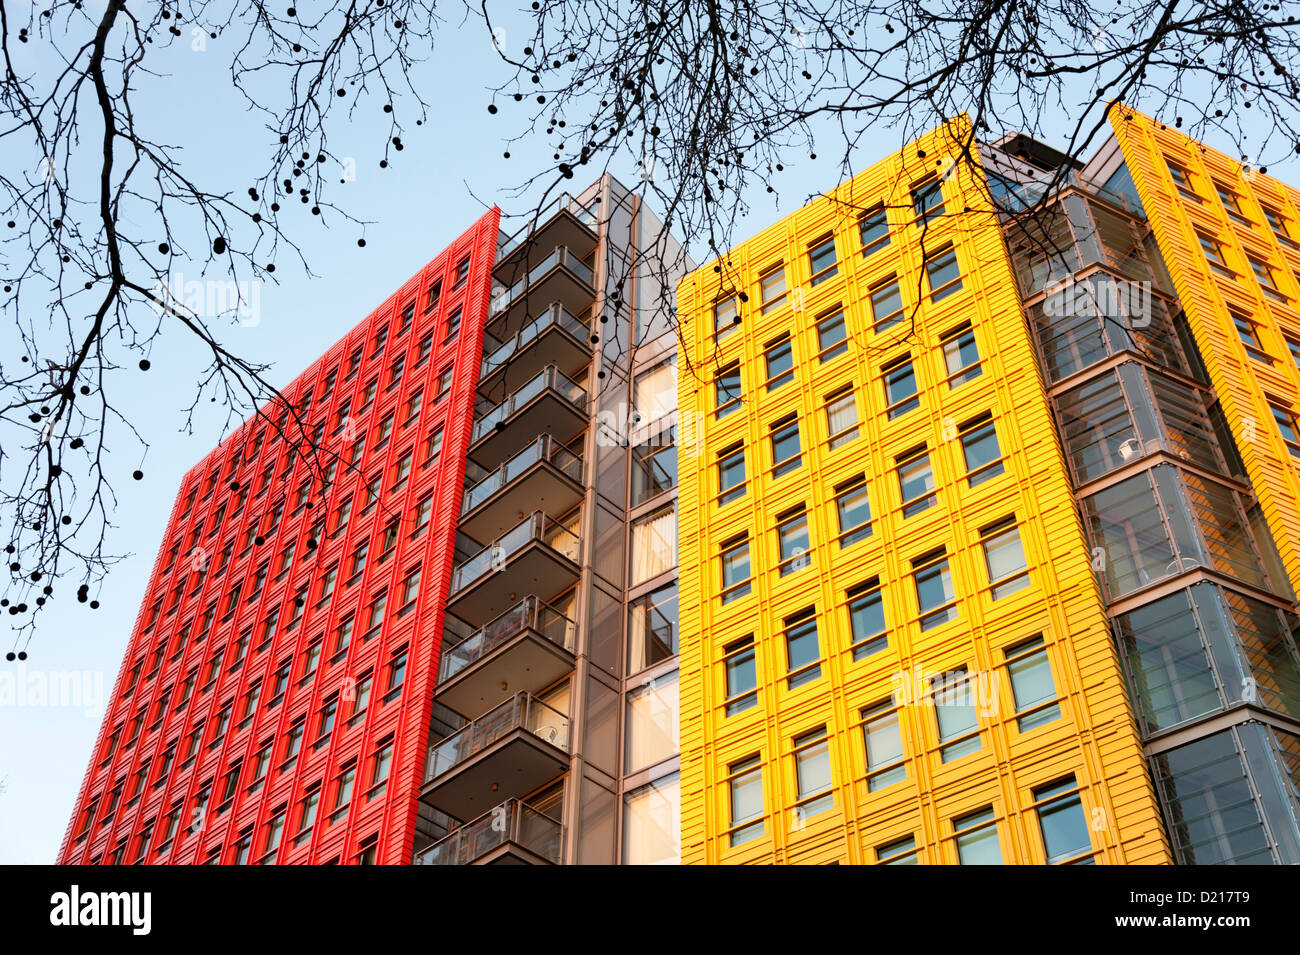 Le coloré Central Saint Giles Londres bâtiments conçus par l'architecte italien Renzo Piano, son premier travail au Royaume-Uni Banque D'Images